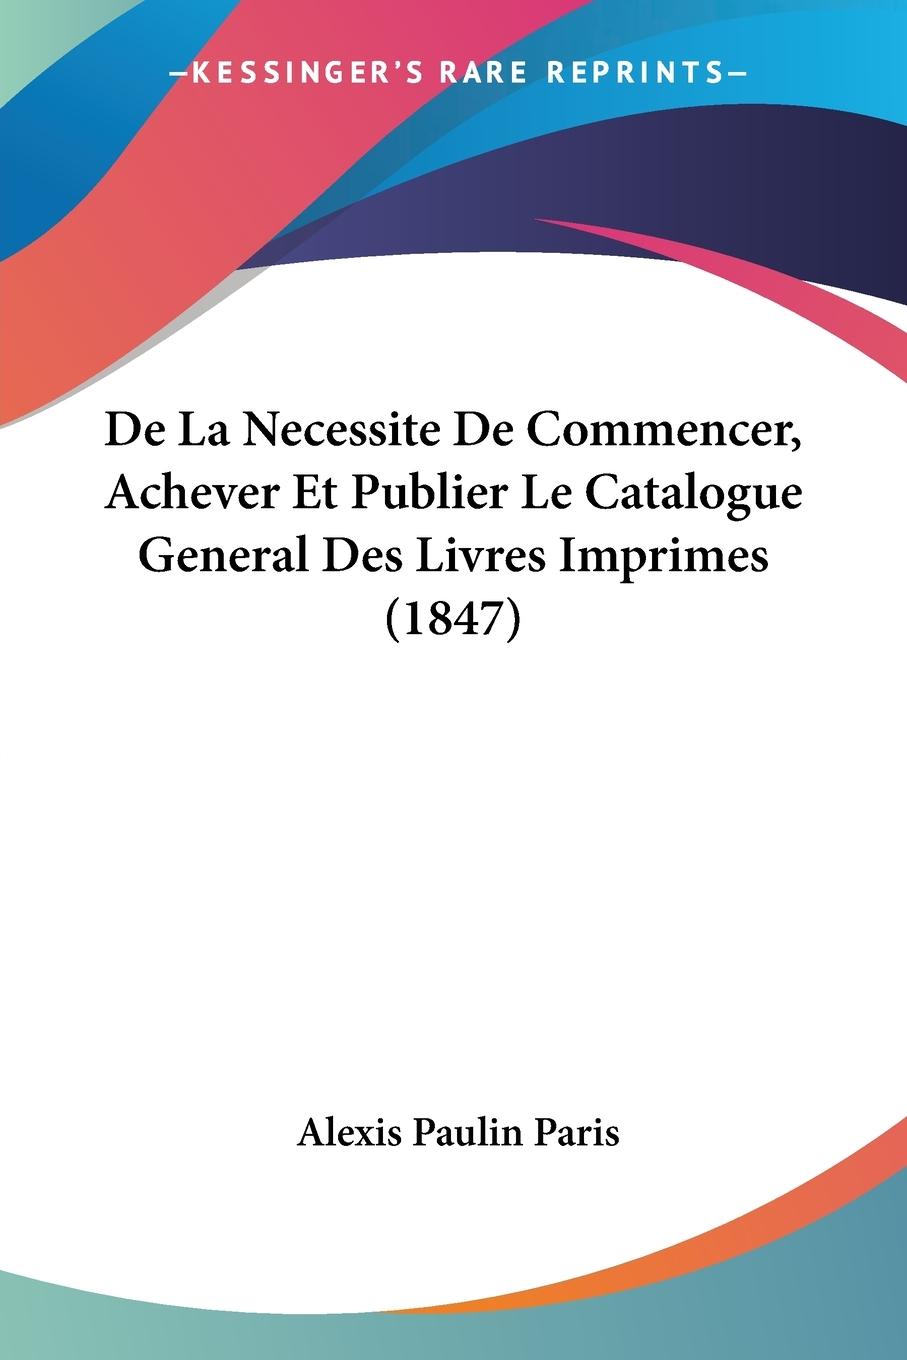 De La Necessite De Commencer, Achever Et Publier Le Catalogue General Des Livres Imprimes (1847) - Paris, Alexis Paulin